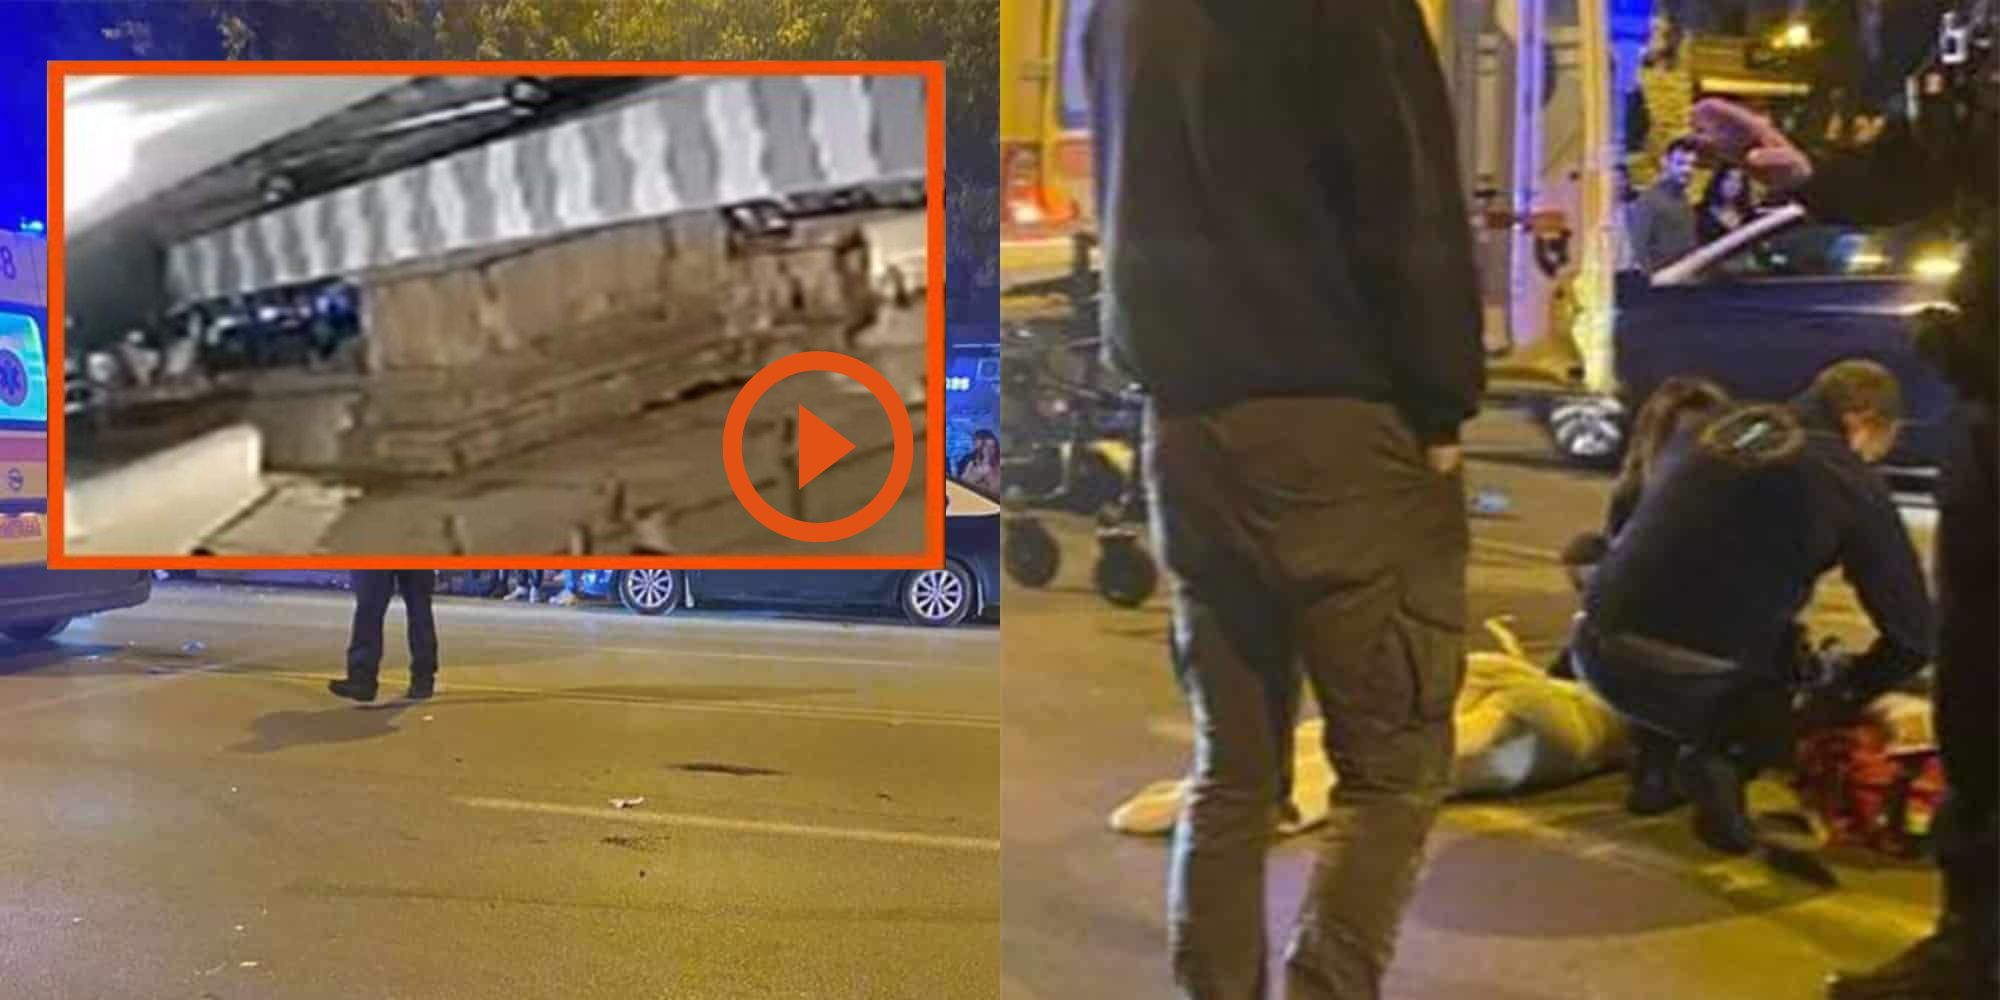 Βίντεο ντοκουμέντο λίγο μετά το ατύχημα που είχε ως αποτέλεσμα να τραυματιστεί η 21χρονη στη Θεσσαλονίκη